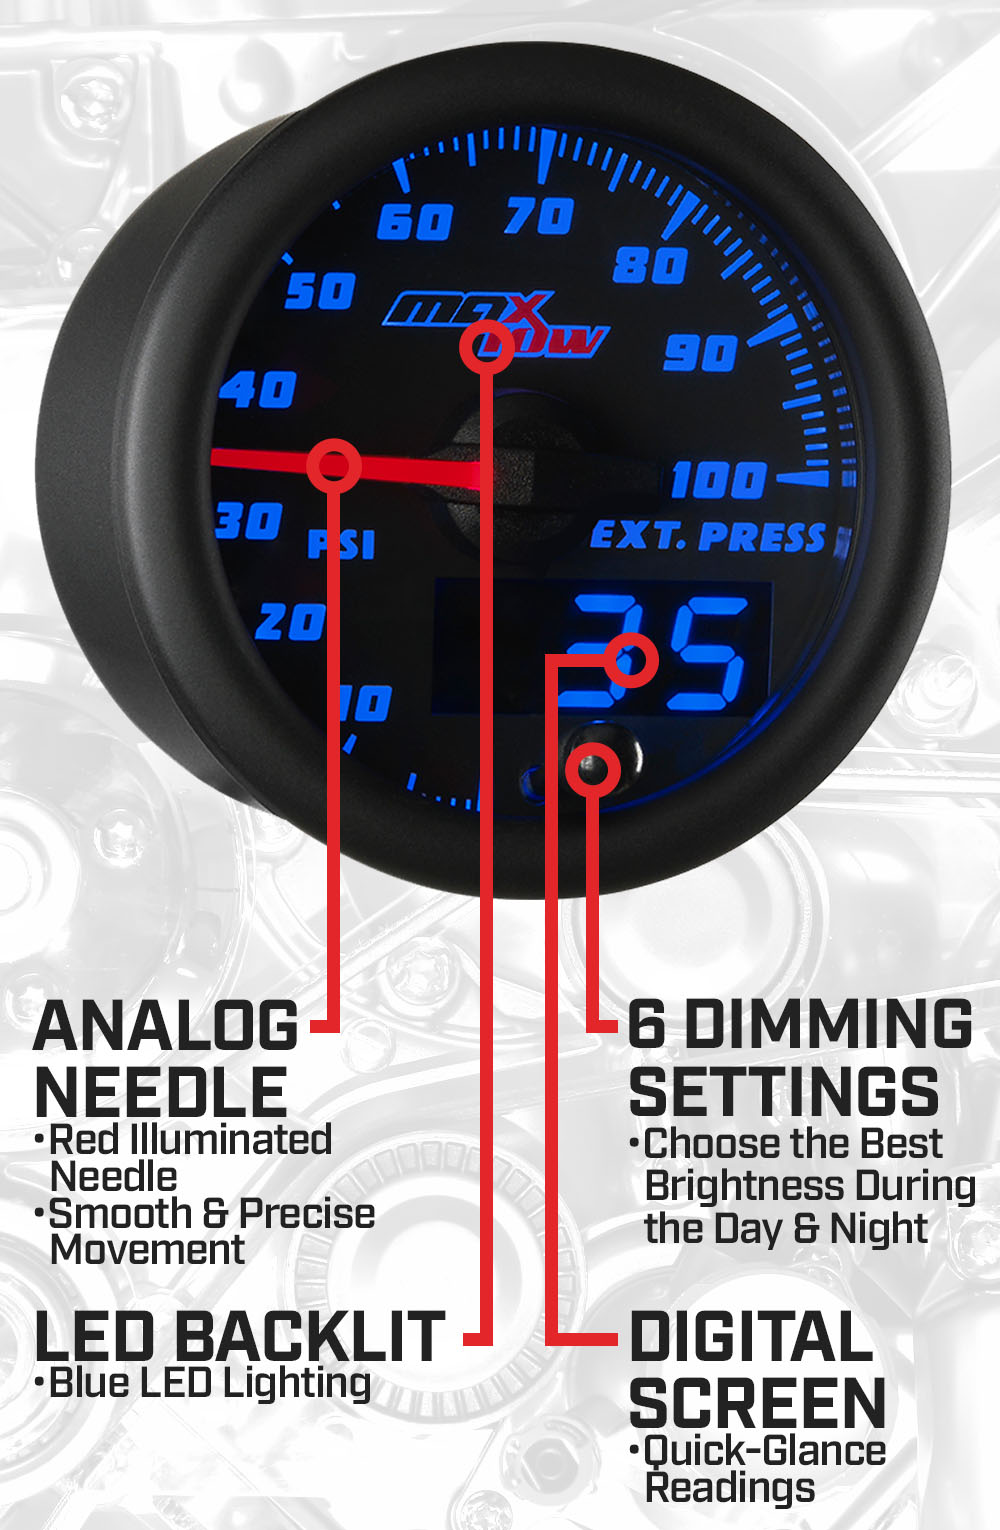 Black & Blue Double Vision 100 PSI Drive Pressure Gauge Features